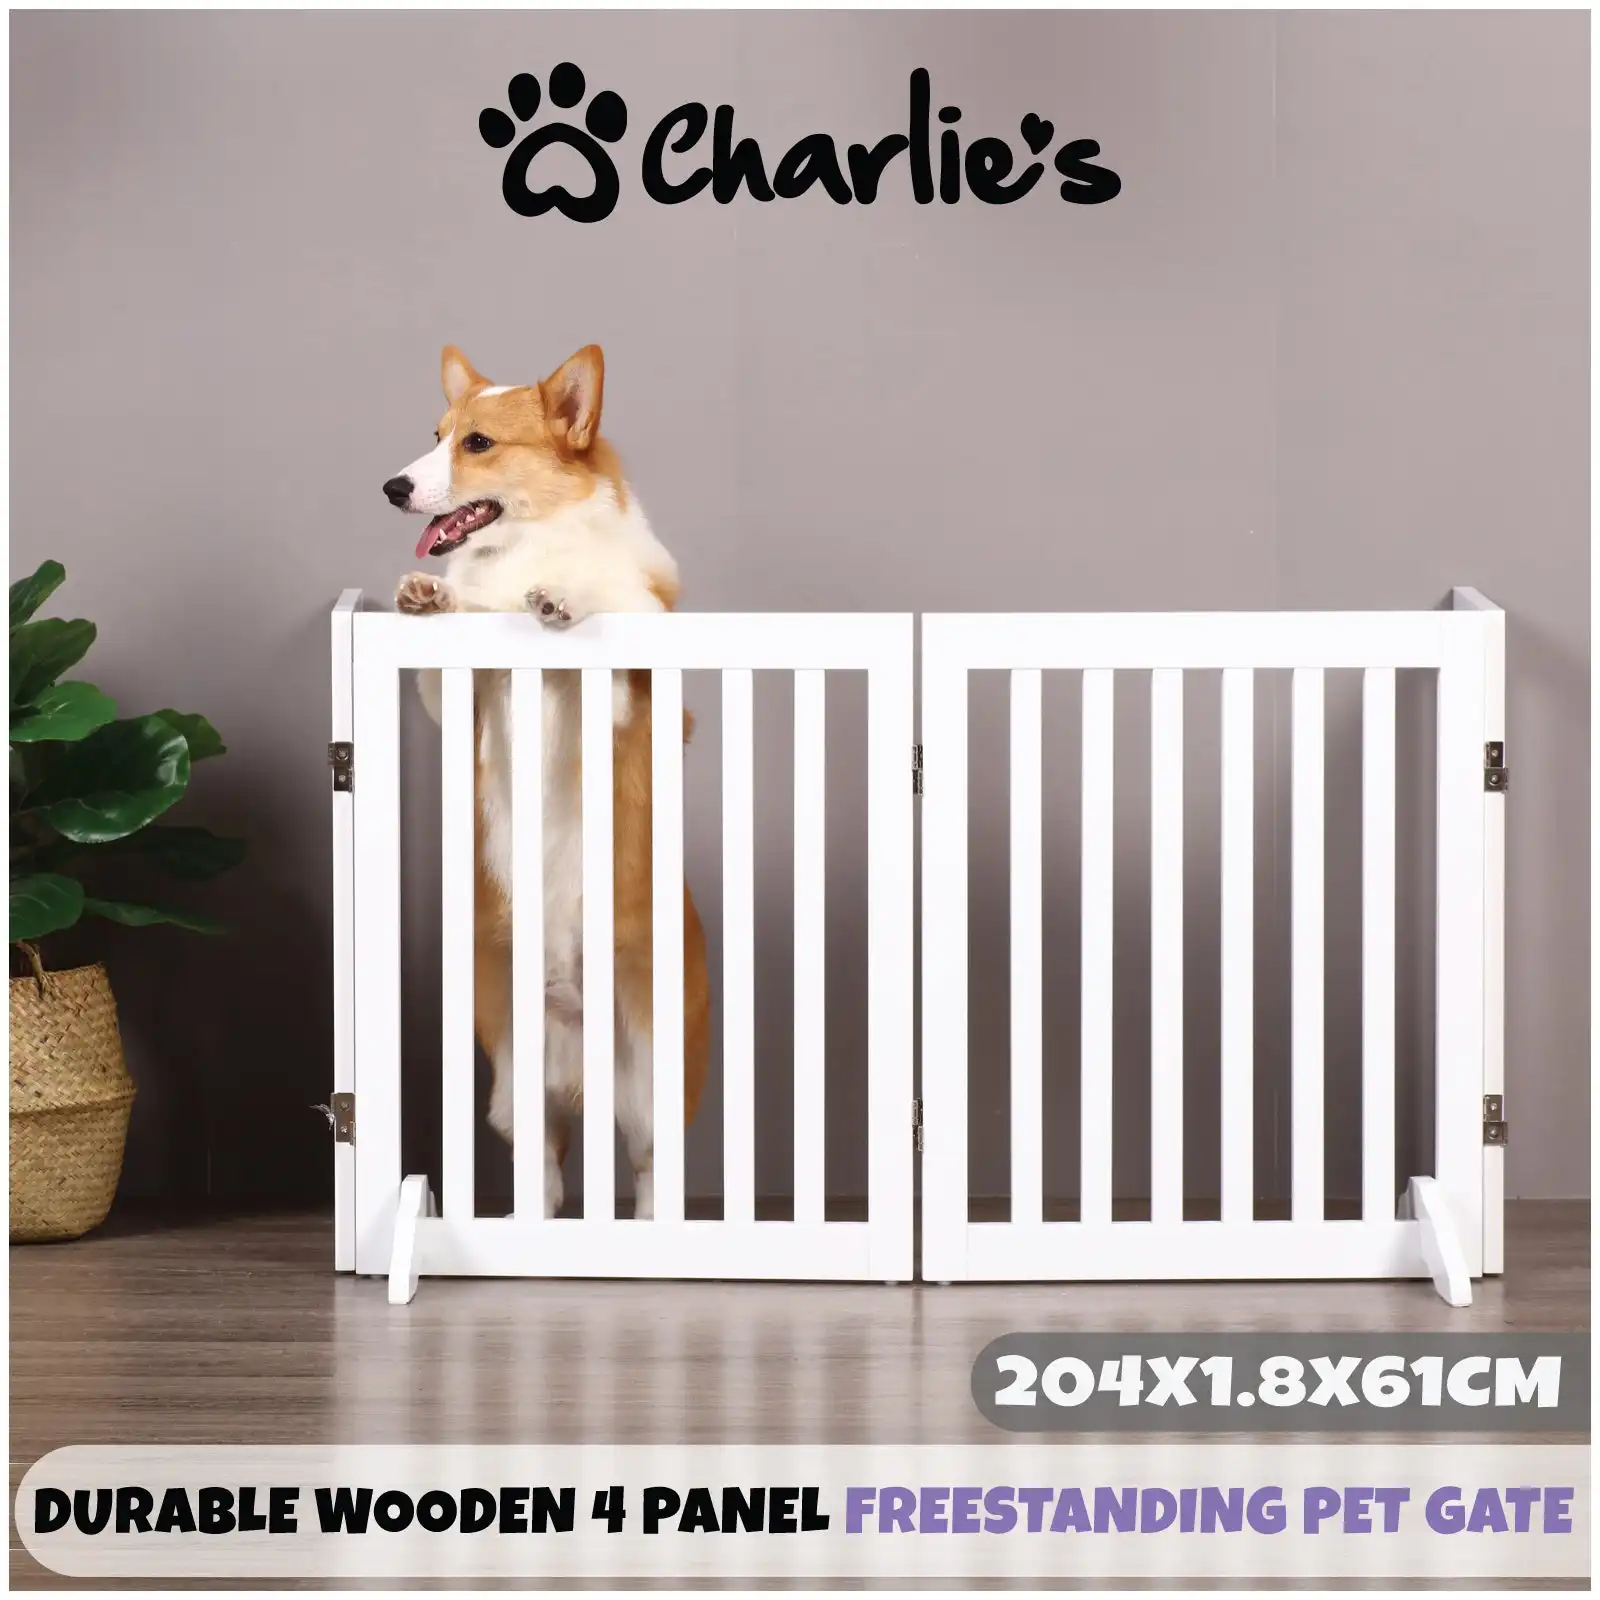 Charlie's Wooden 4 Panel Freestanding Dog Gate White